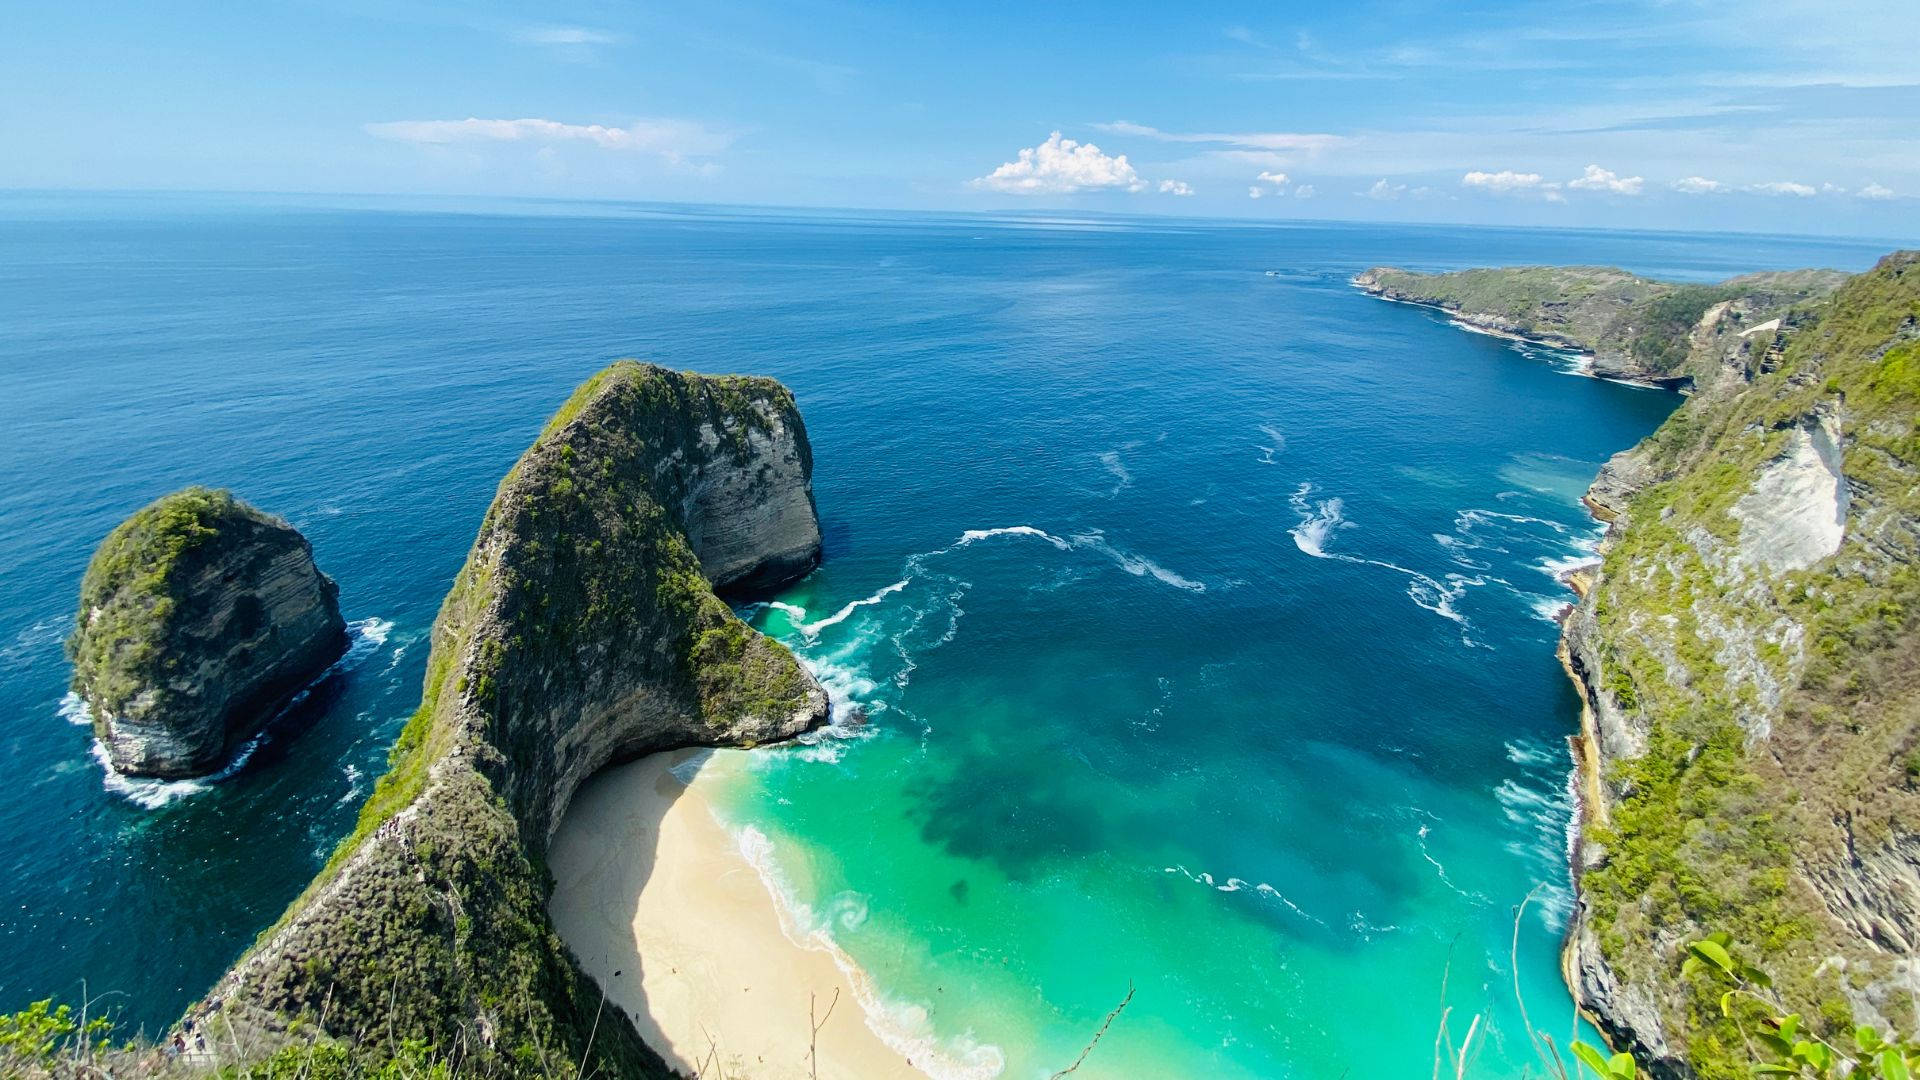 Blue Green Beach Bali Island Background